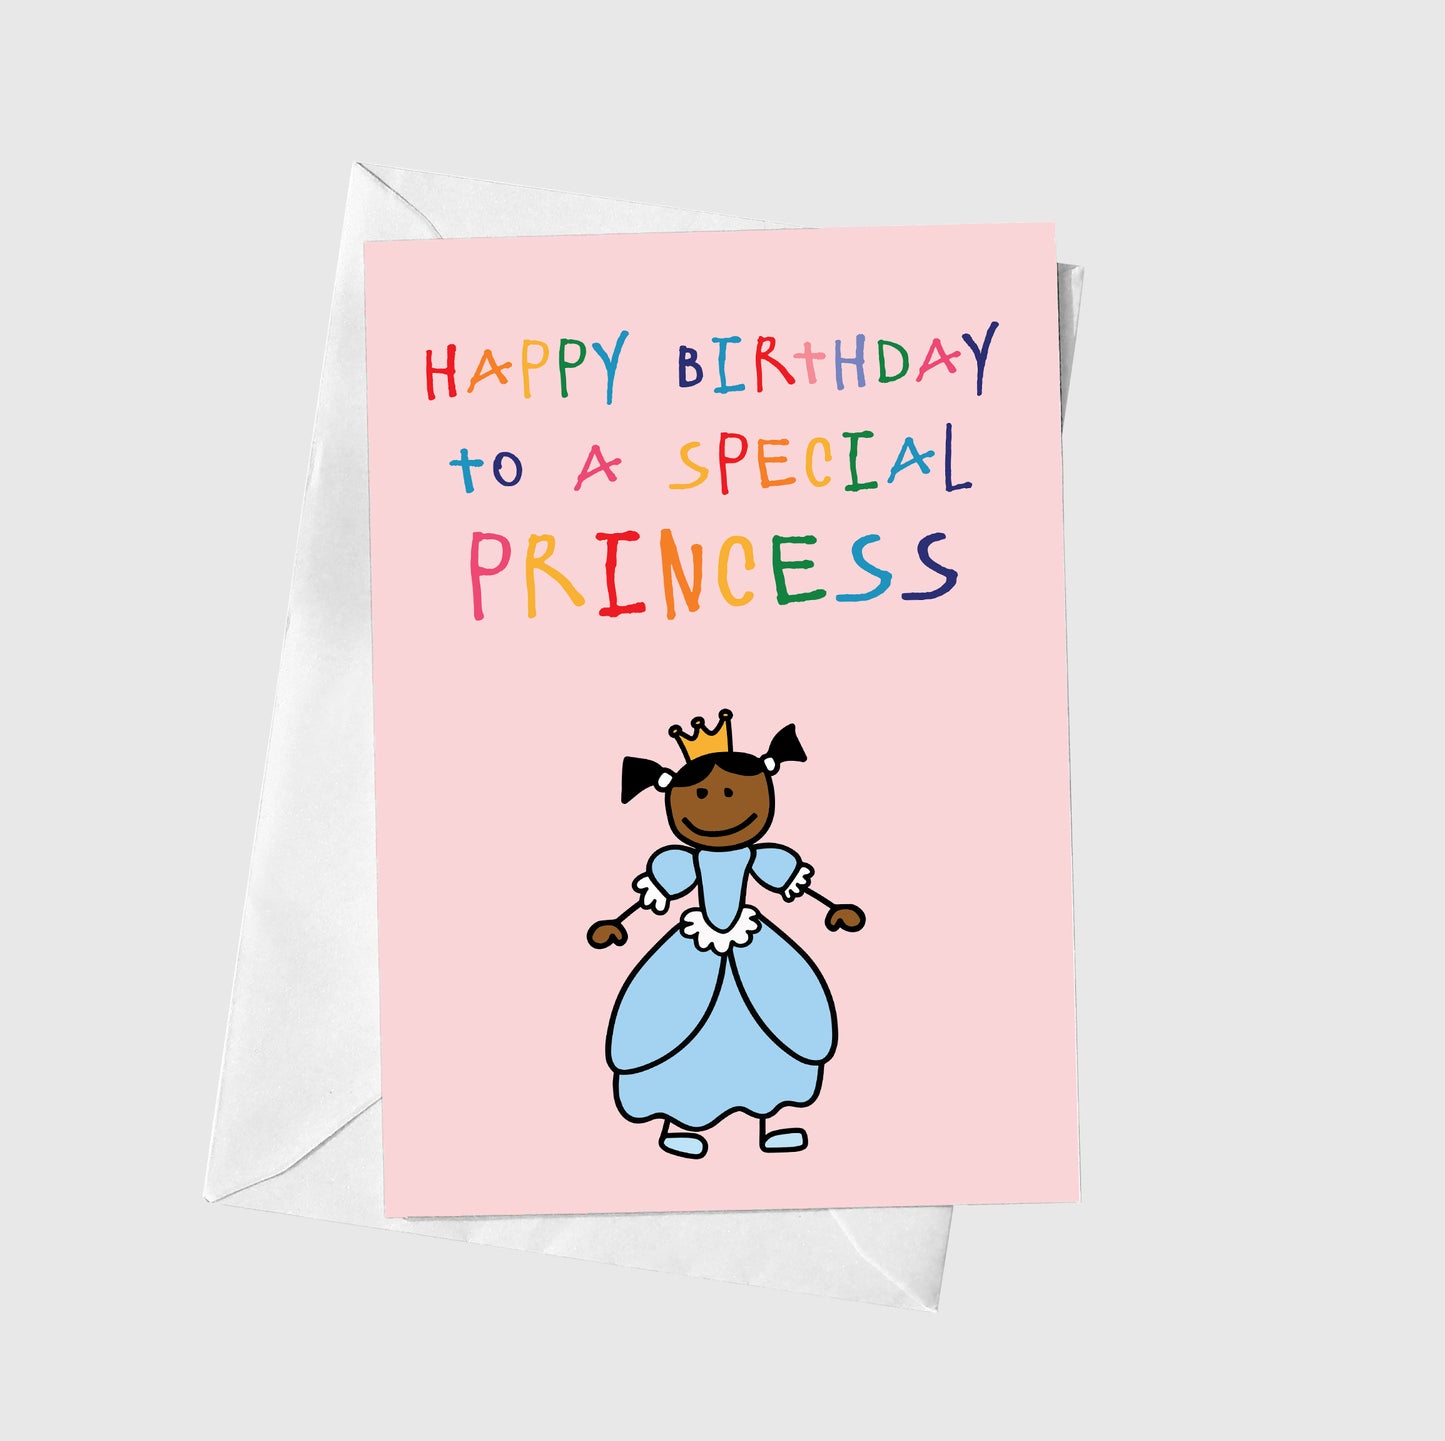 To A Special Princess